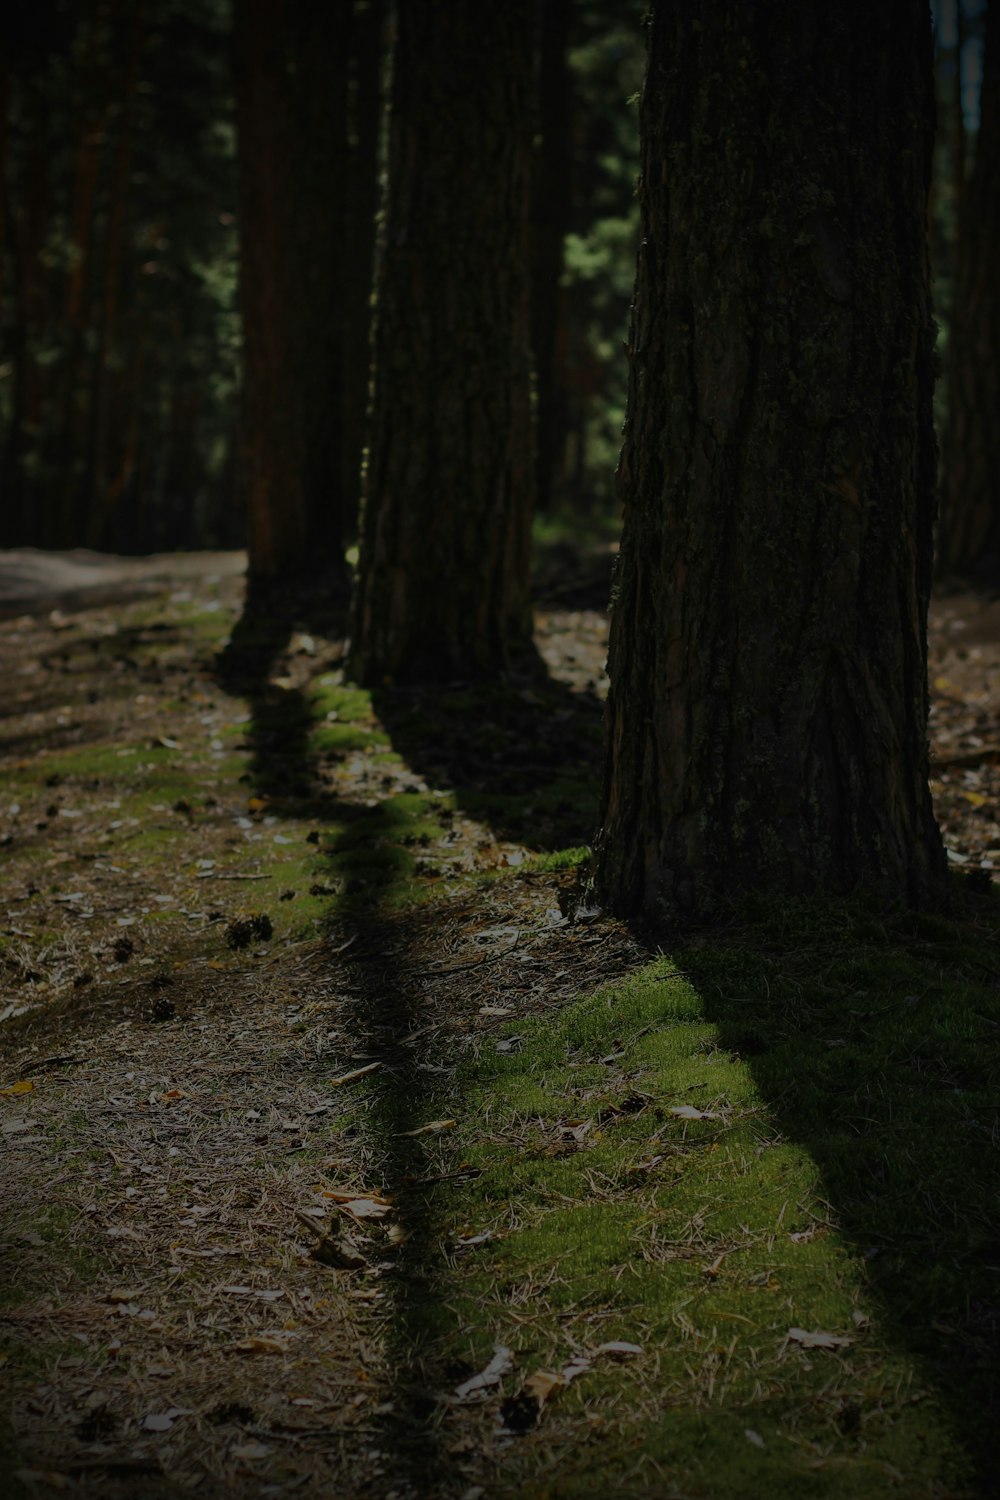 La sombra de una persona parada en medio de un bosque